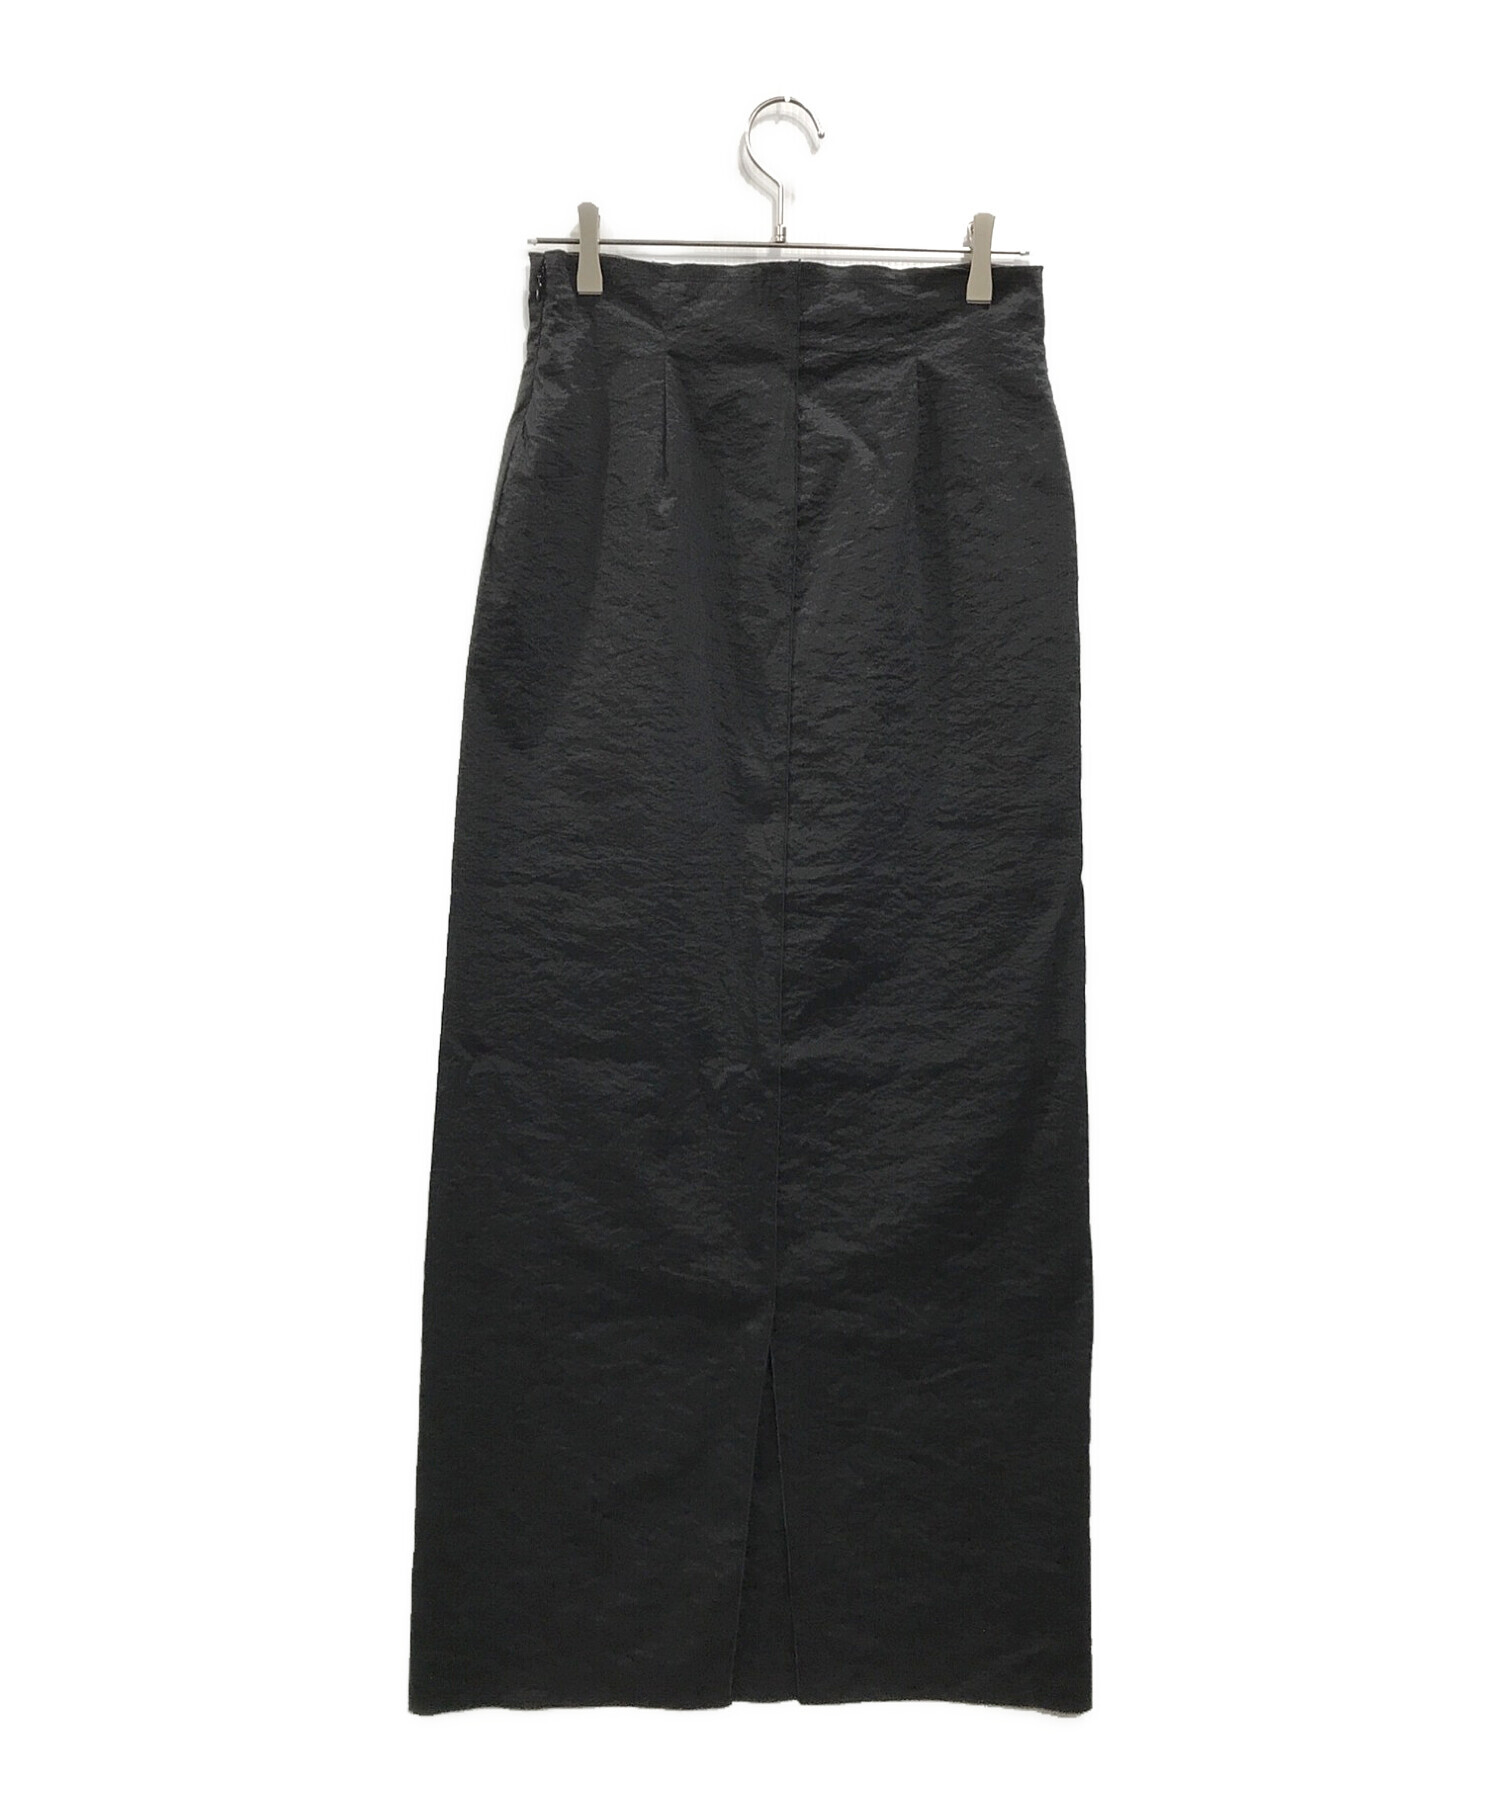 即購入可能ё biotop lingerie sheer tight skirt ブラック